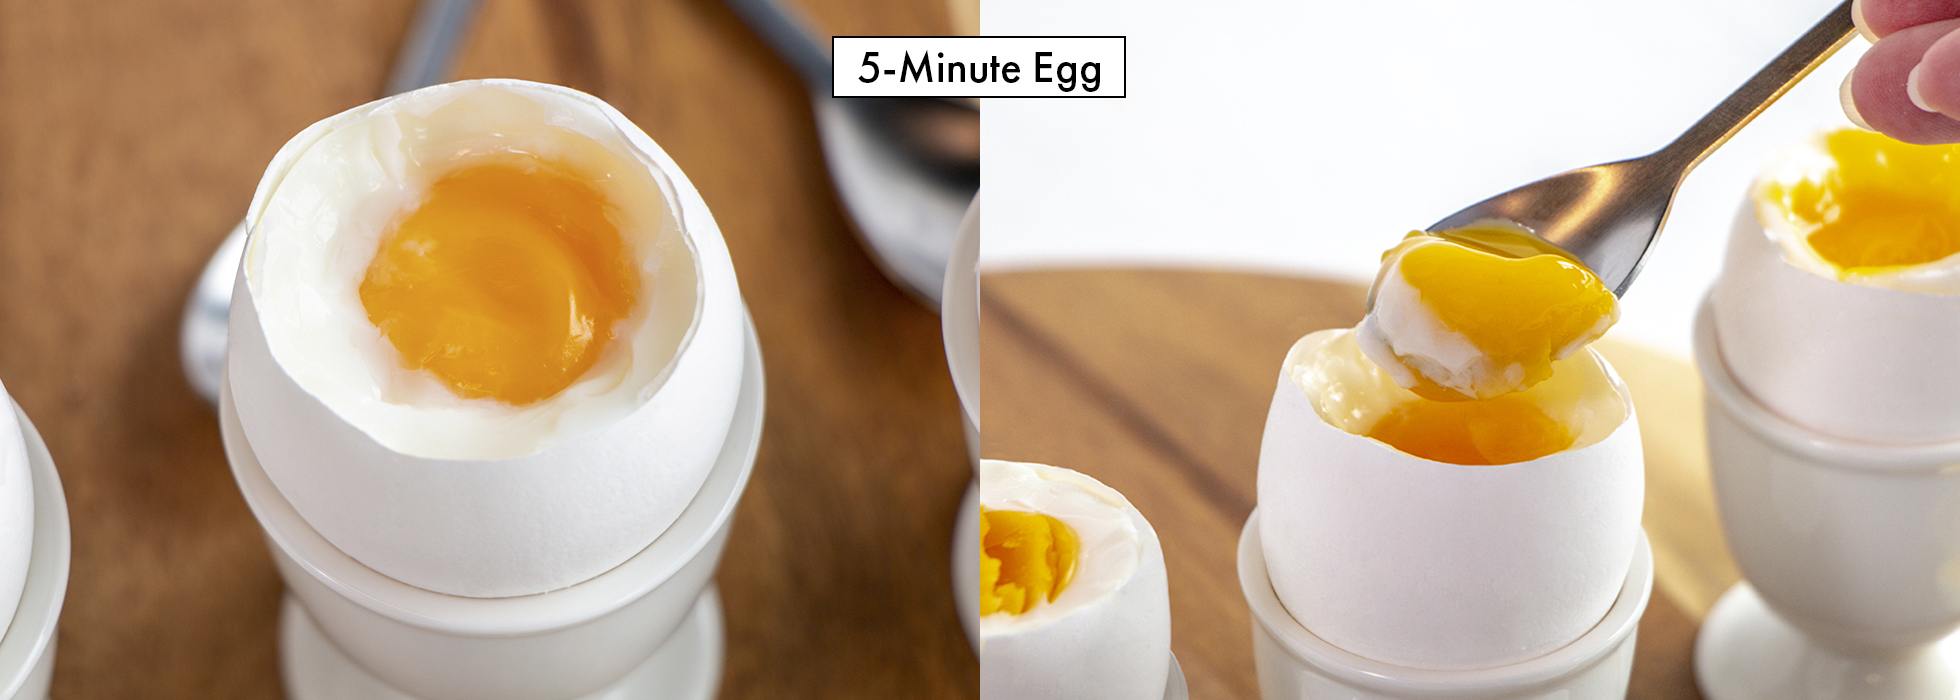 5-Minute Egg